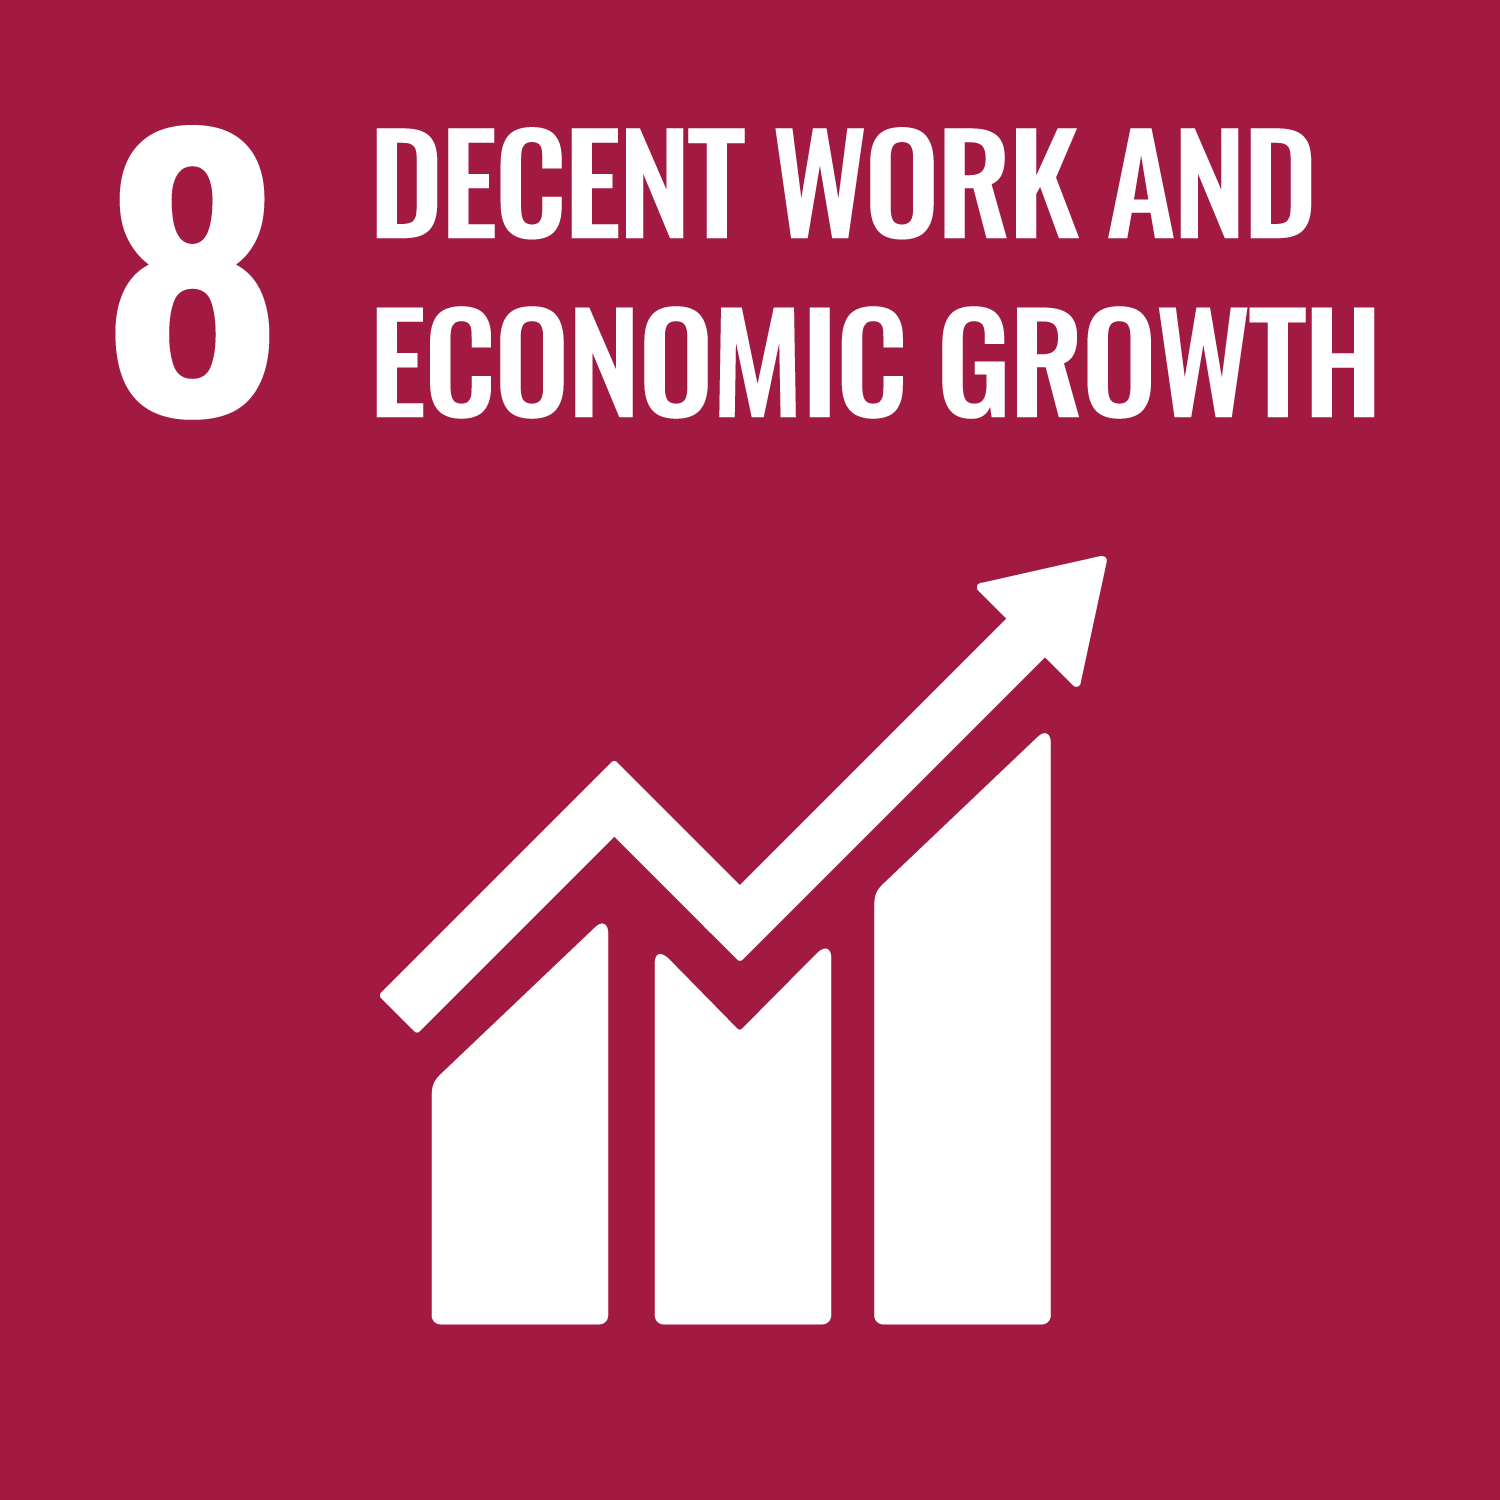 SDGs goals No.8